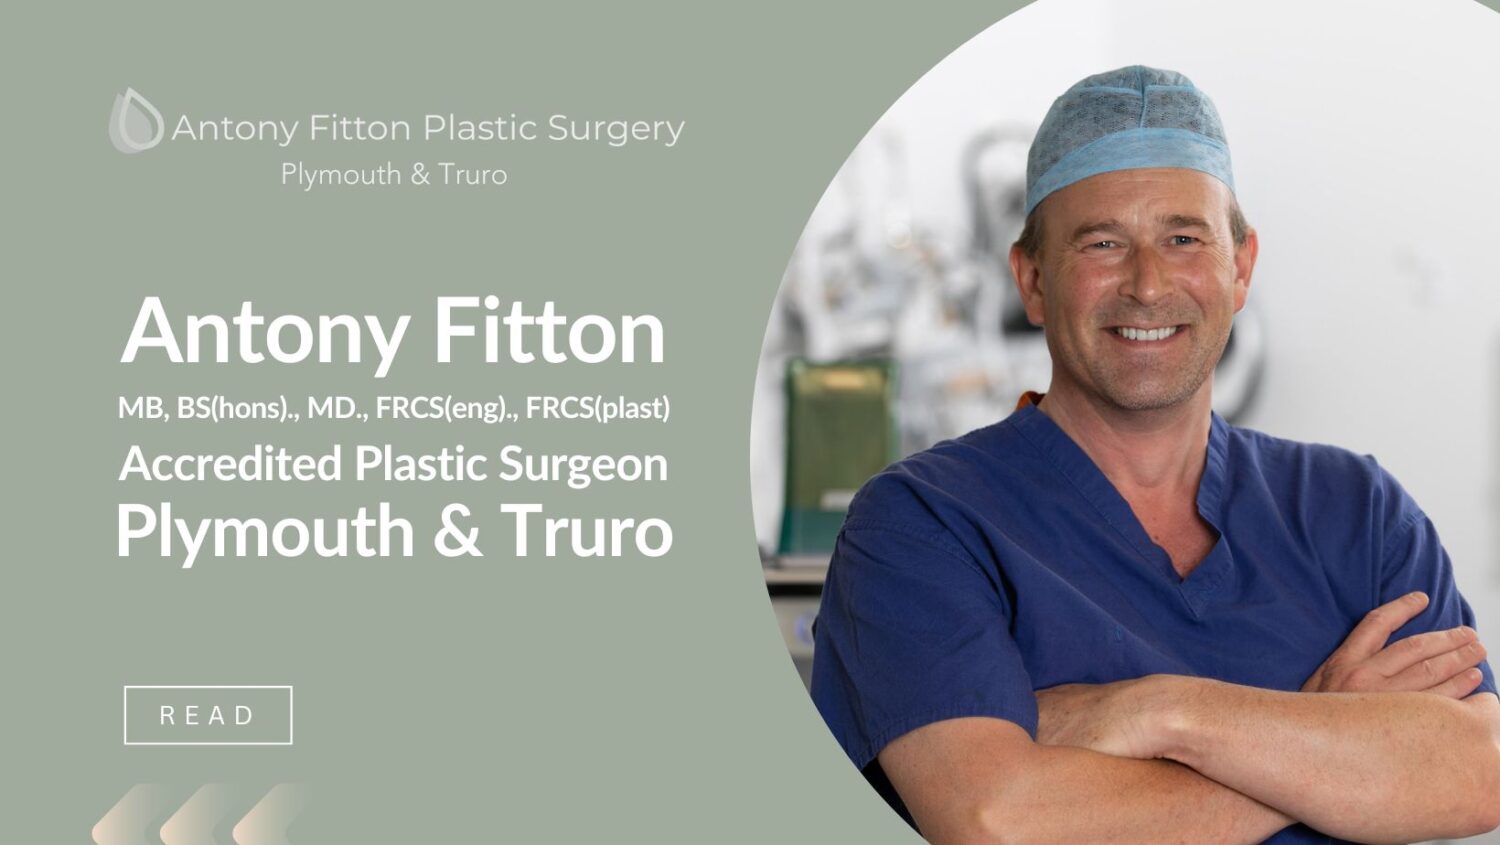 Antony Fitton Accredited Plastic Surgeon Plymouth & Truro